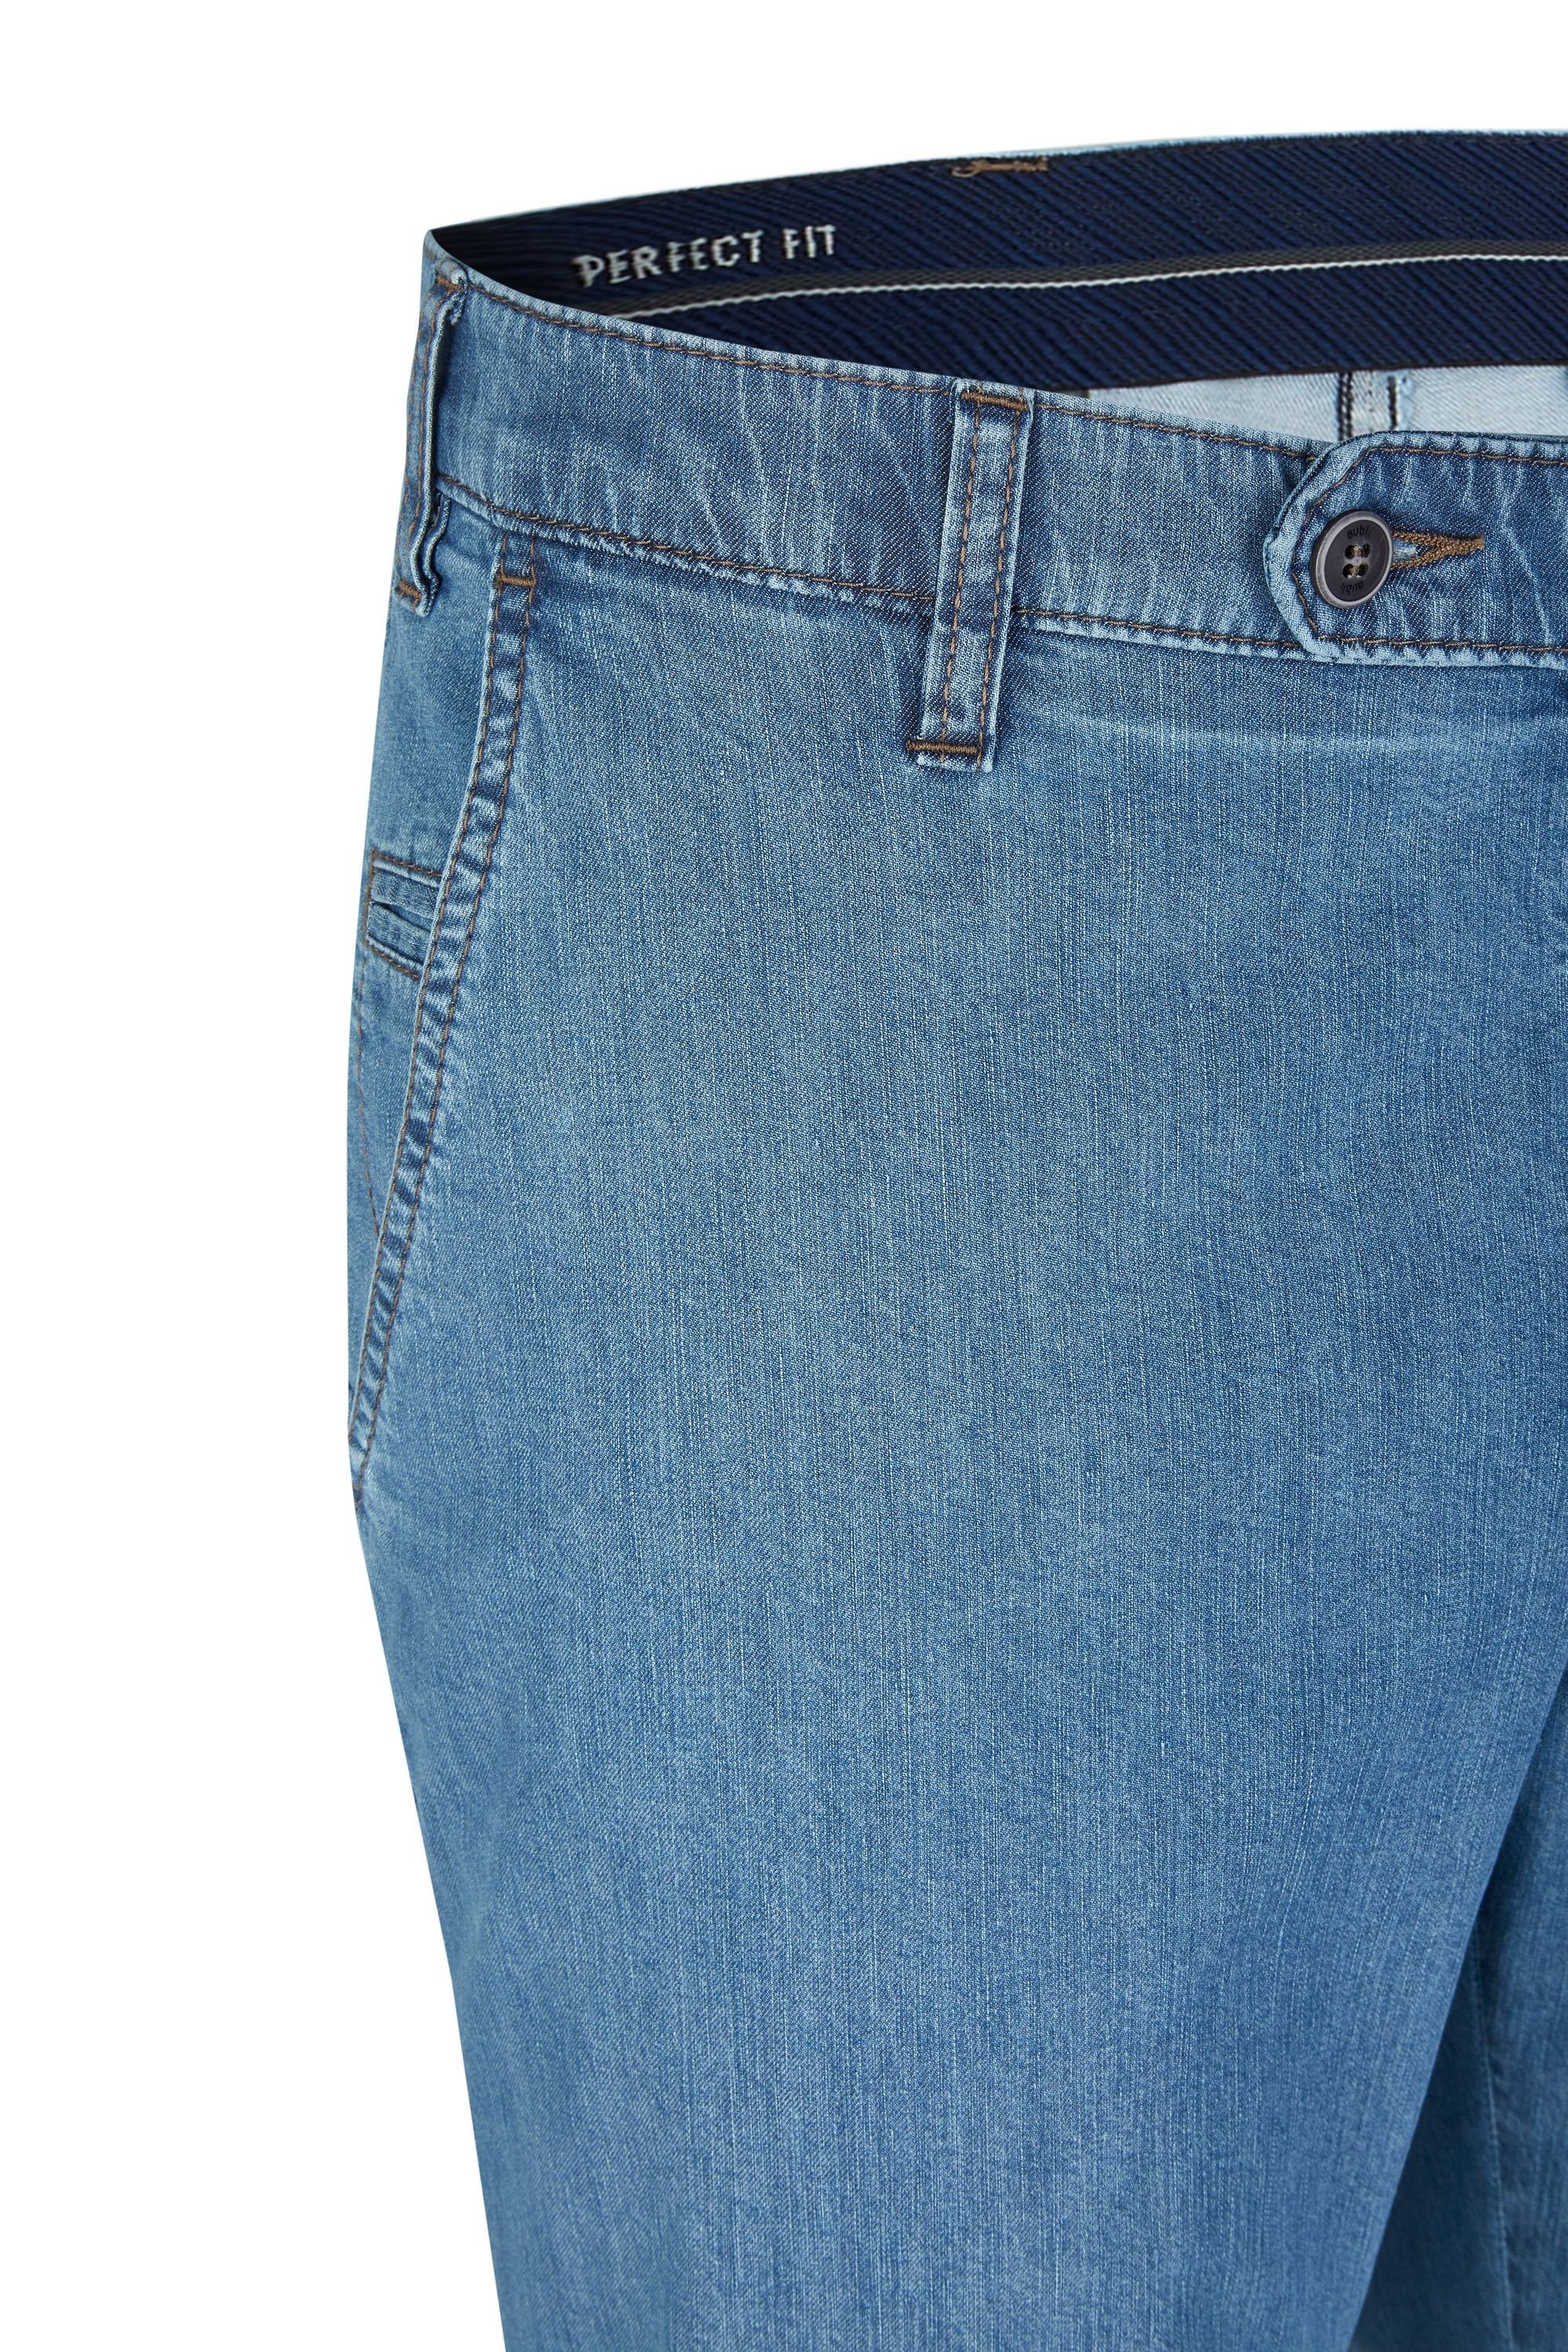 Stretch (43) aus 526 Jeans aubi: bleached Herren Baumwolle Fit Flex Sommer Modell Bequeme Jeans High aubi Perfect Hose